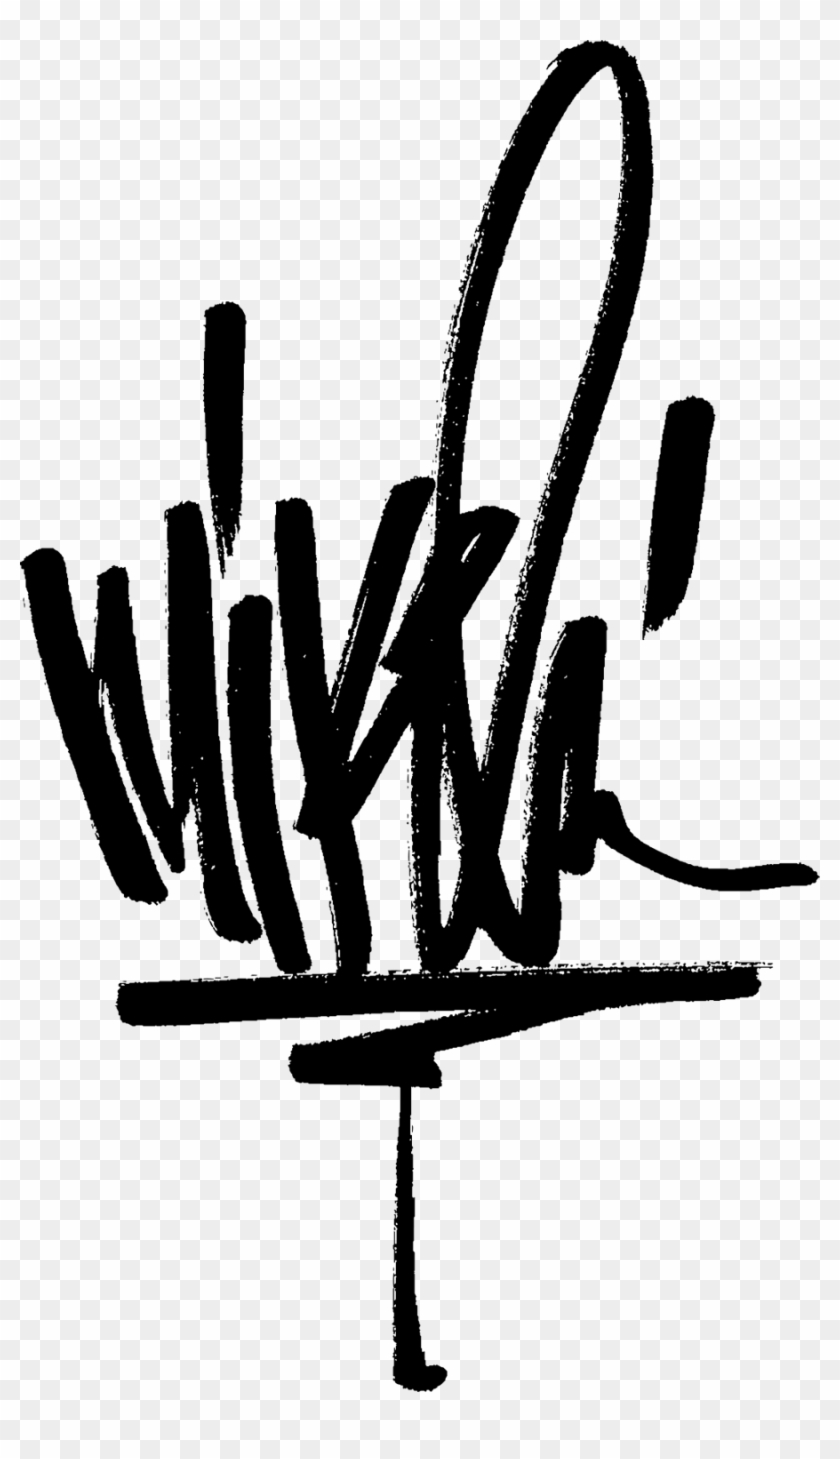 Mike Shinoda Logo Png Clipart #4994831